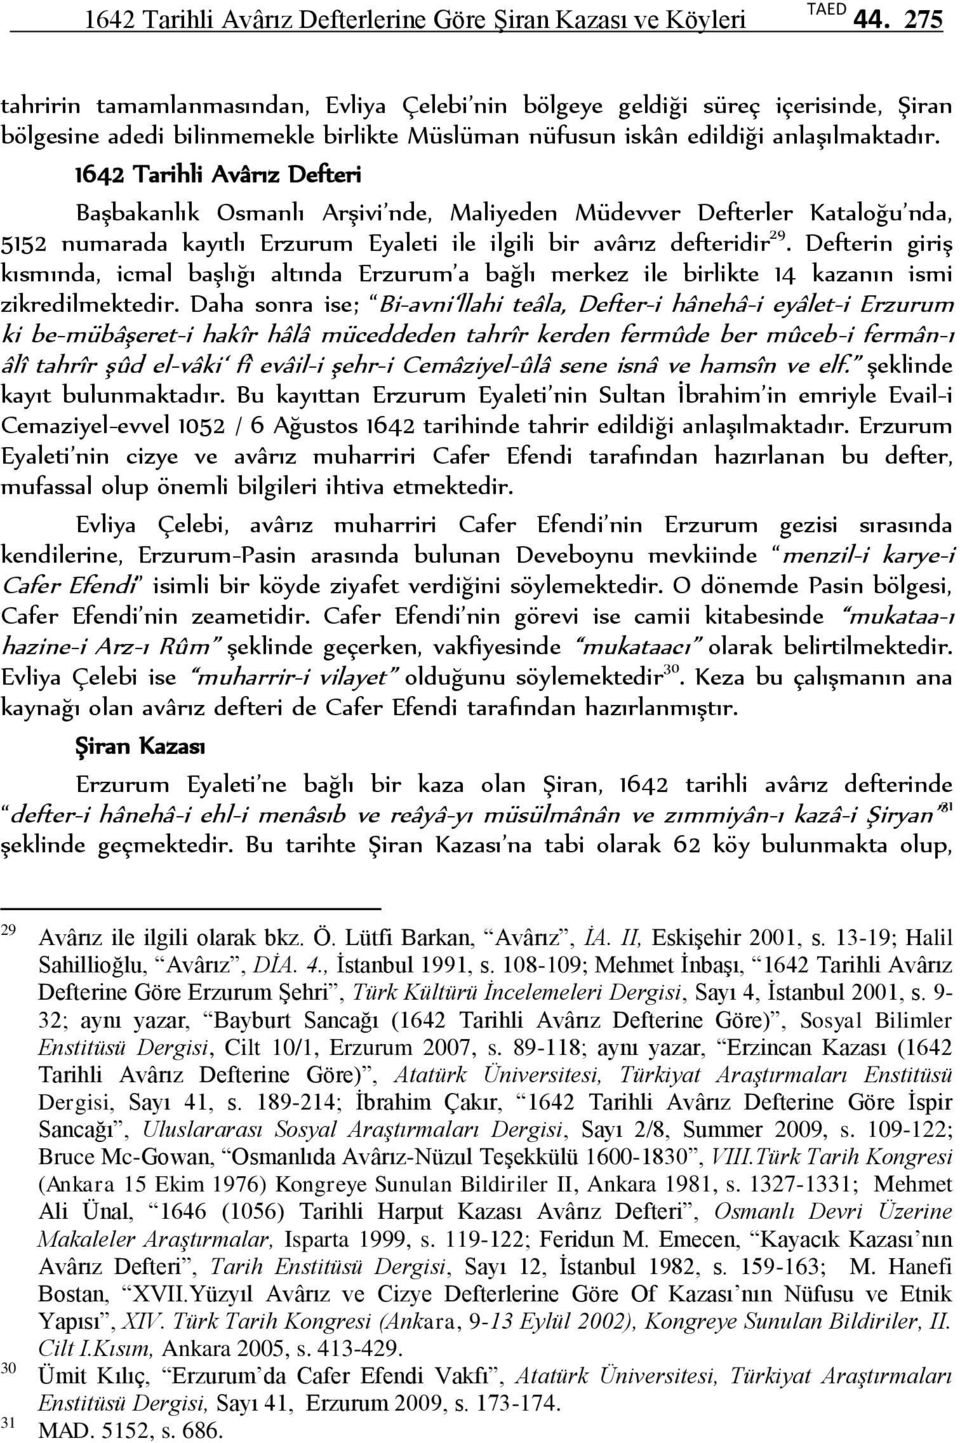 1642 Tarihli Avârız Defteri Başbakanlık Osmanlı Arşivi nde, Maliyeden Müdevver Defterler Kataloğu nda, 5152 numarada kayıtlı Erzurum Eyaleti ile ilgili bir avârız defteridir 29.